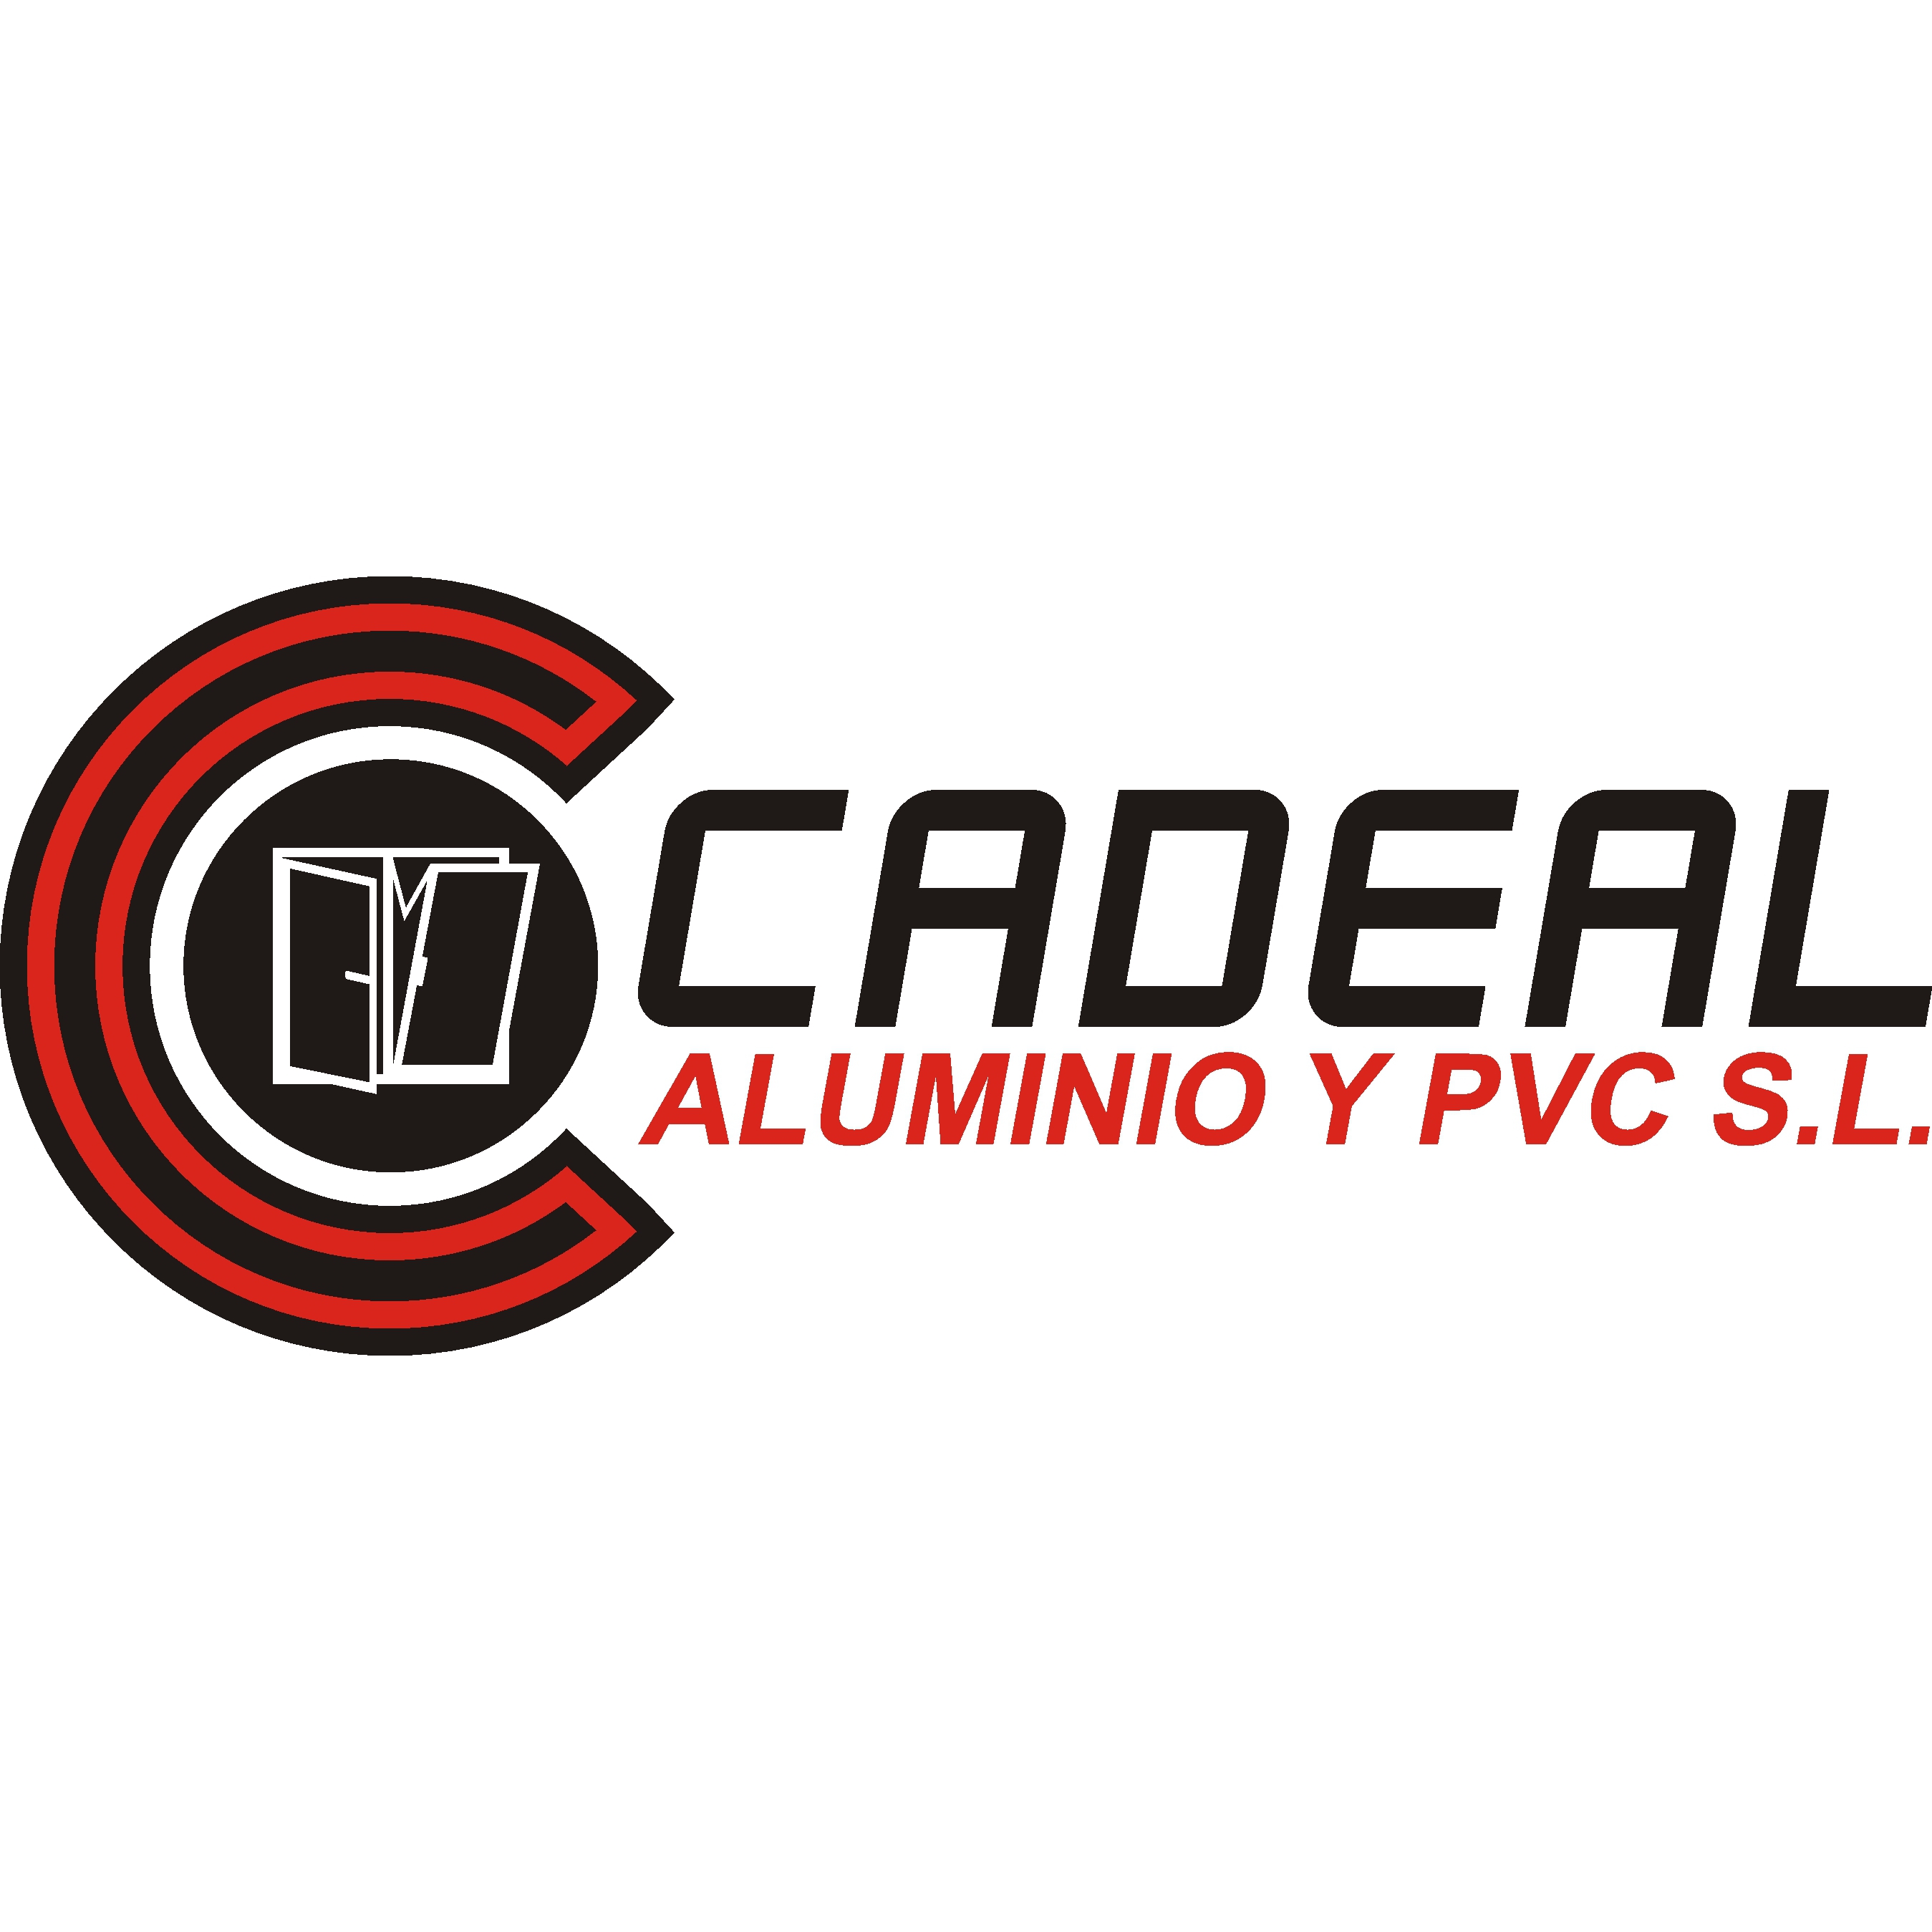 Cadeal Aluminio Y Pvc S.L. Valladolid